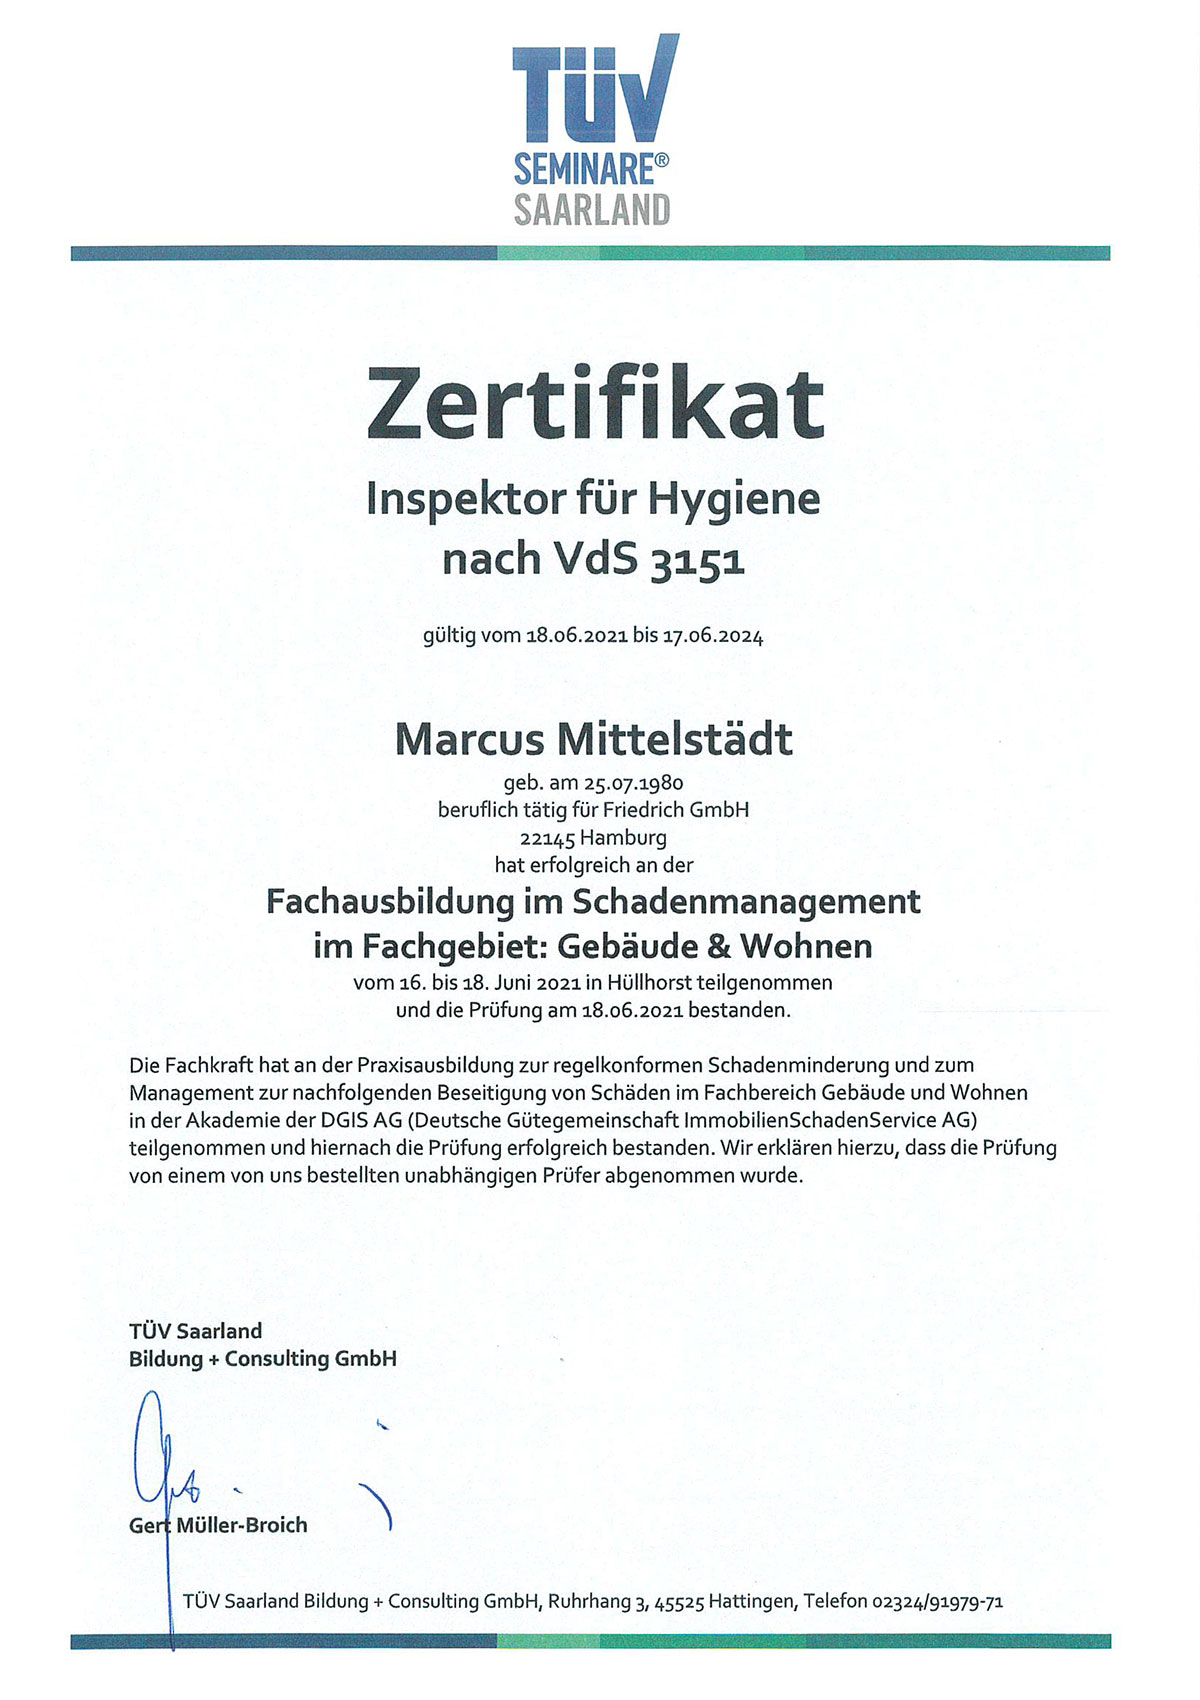 Zertifikat Inspektor für Hygiene Marcus Mittelstädt